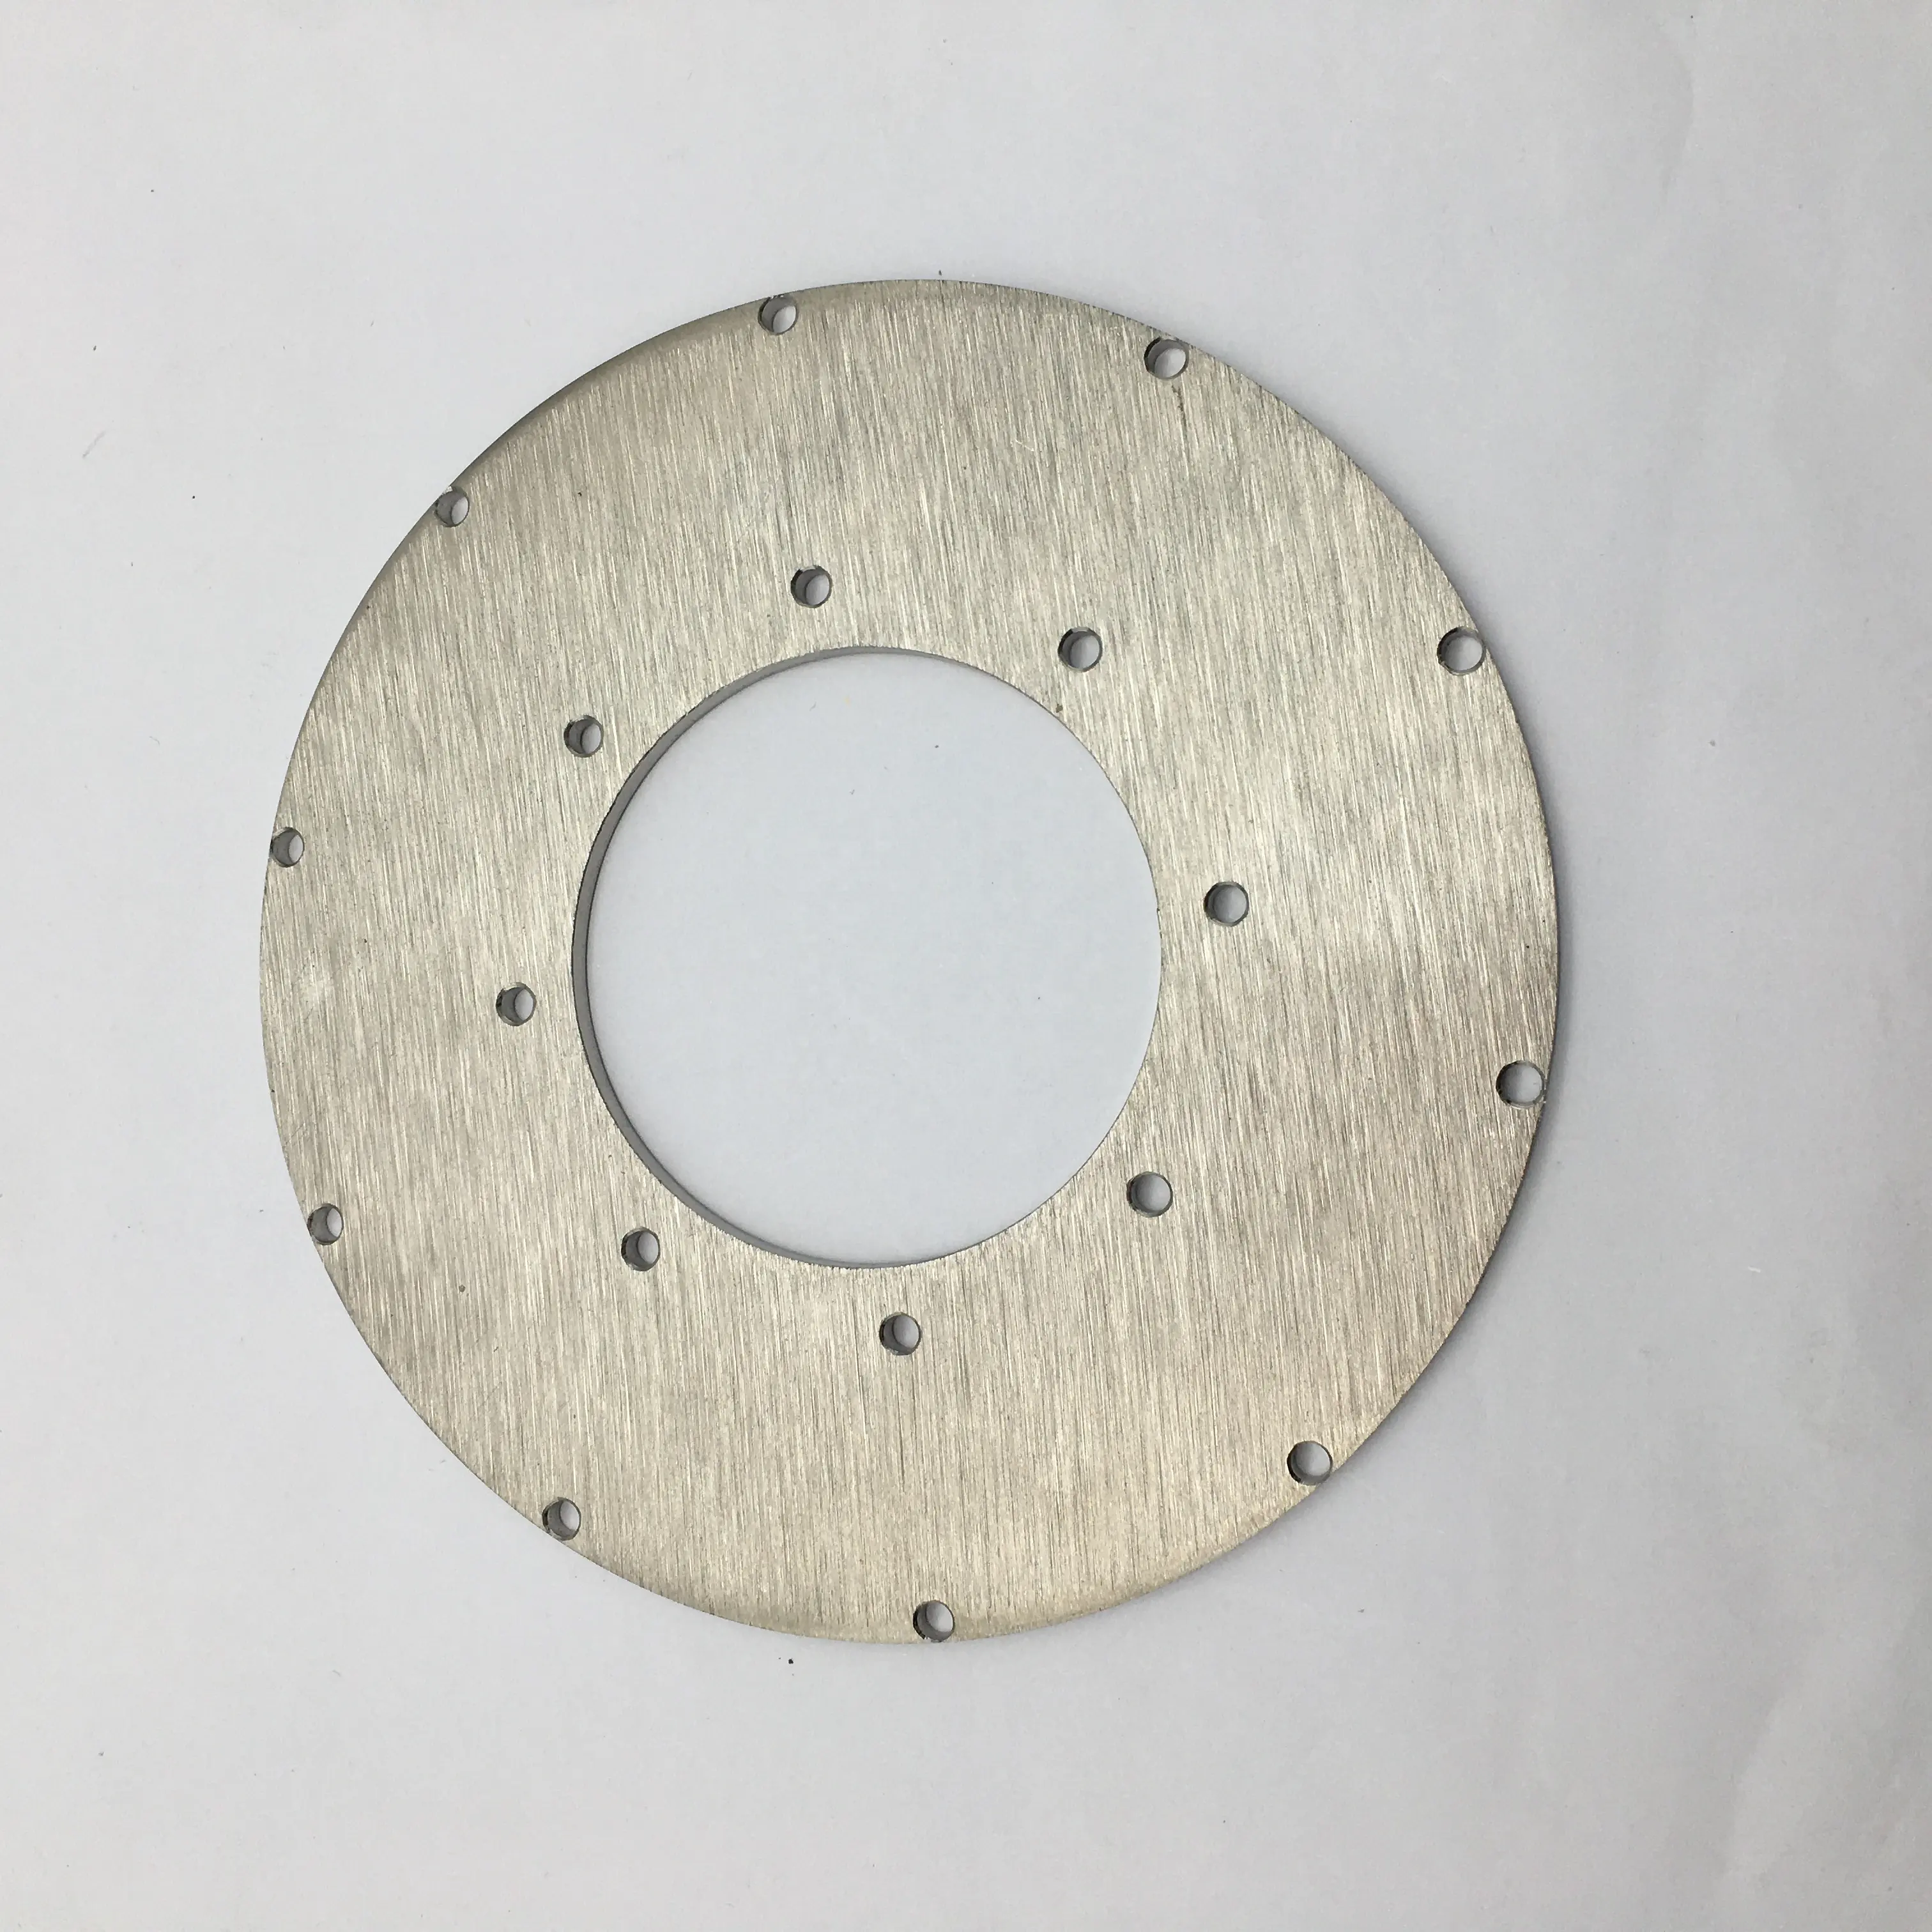 OEMカスタマイズステンレス鋼304レーザー切断面線引き処理円形プレート東莞中国製造